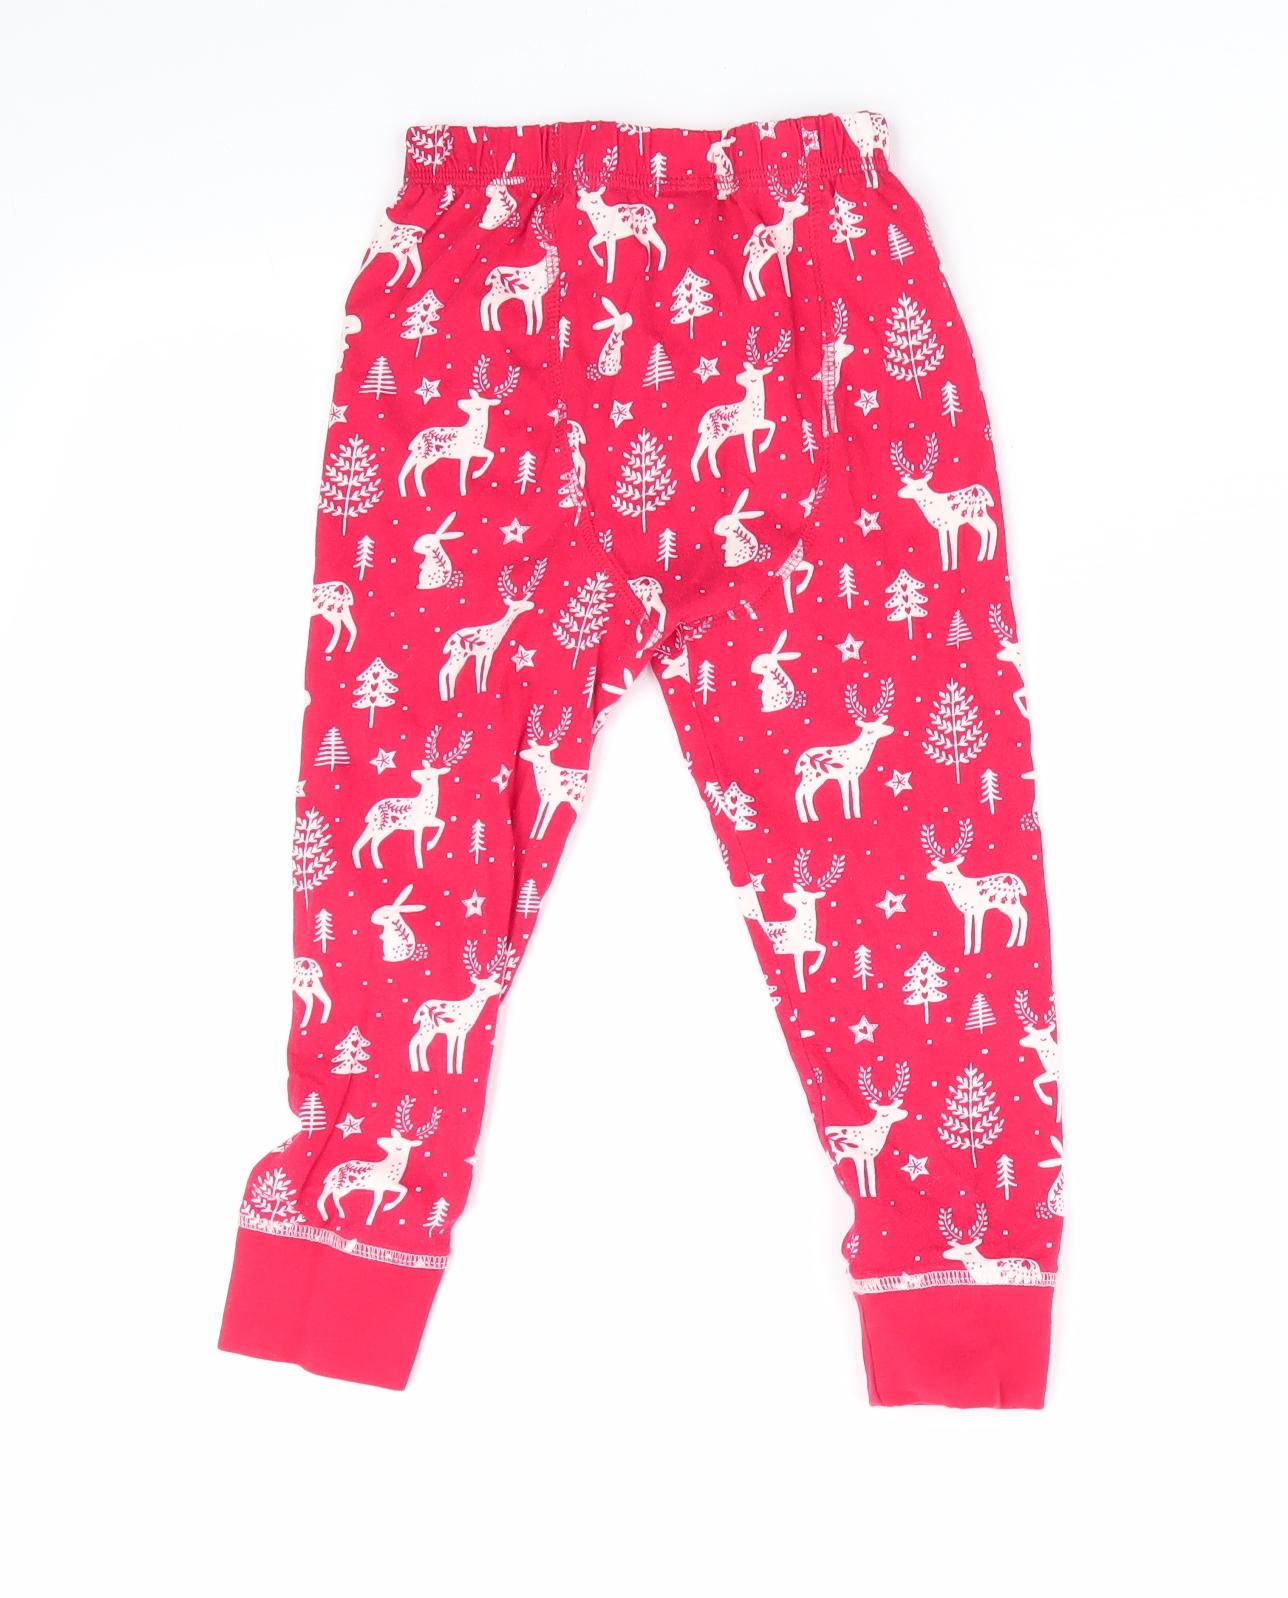 TU Boys Red Animal Print   Pyjama Pants Size 3-4 Years  - Christmas Print